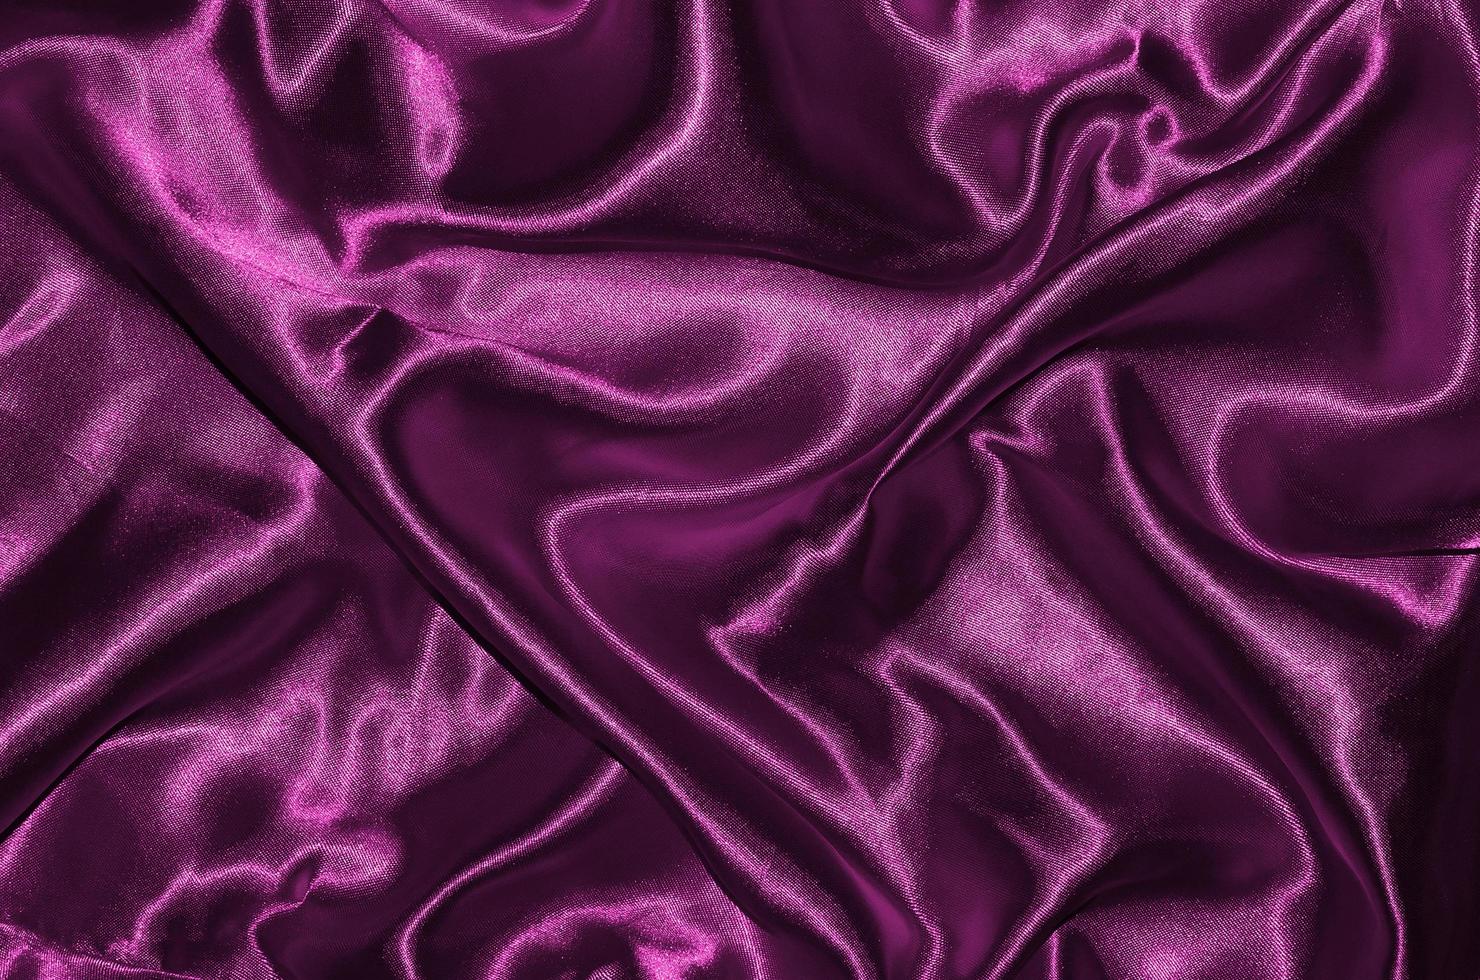 Hintergrund und Tapete aus rosa Stoff und gestreiftem Textil foto